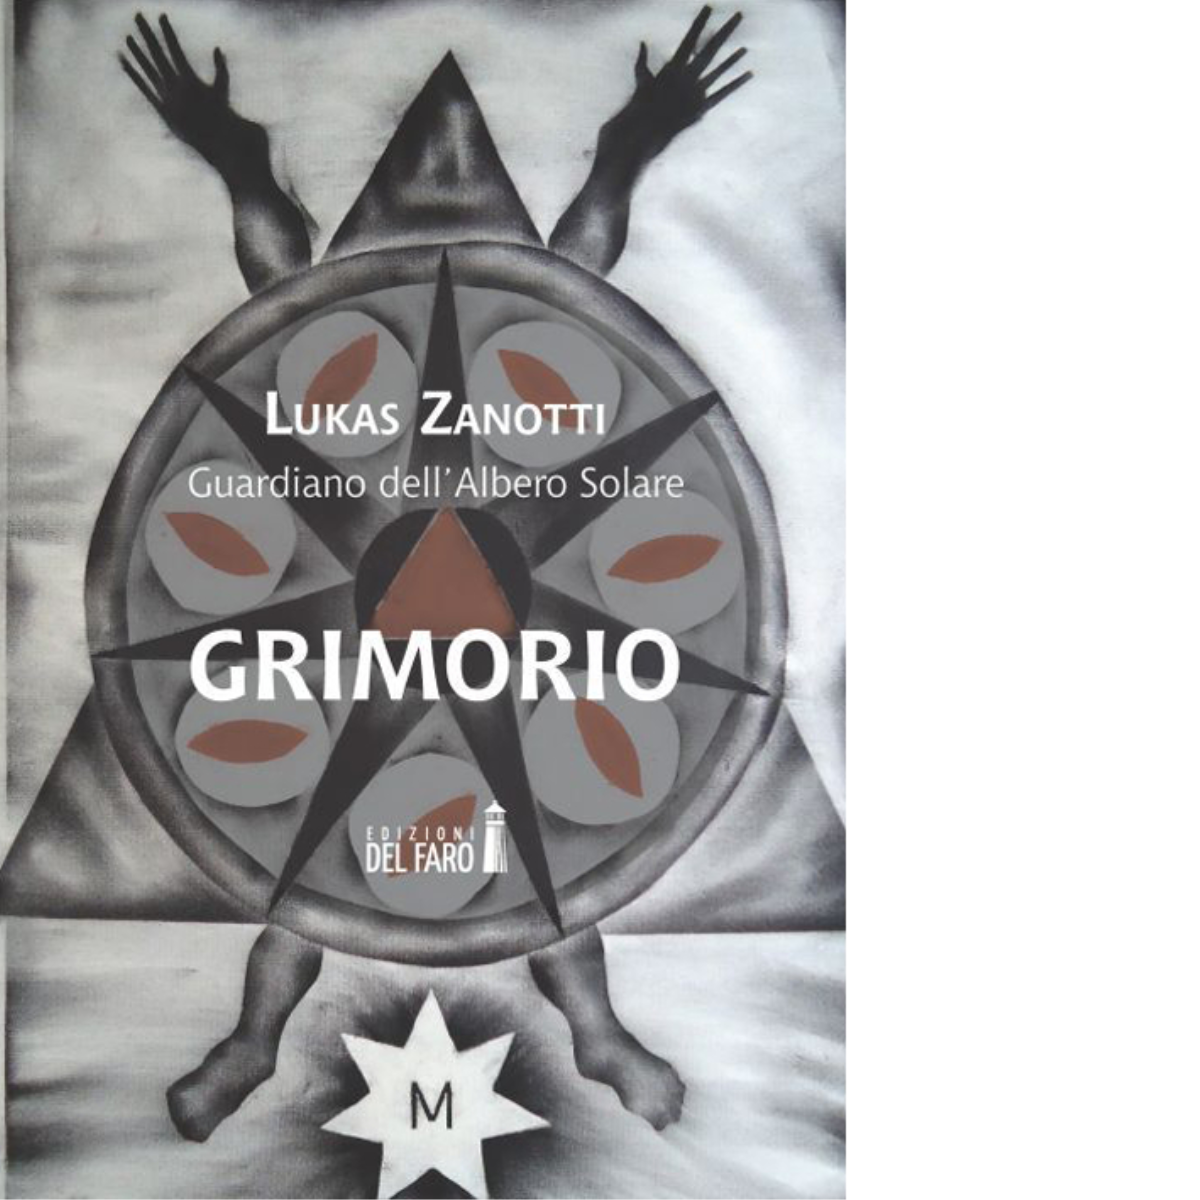 Grimorio di Lukas Zanotti -Edizioni del Faro , 2015